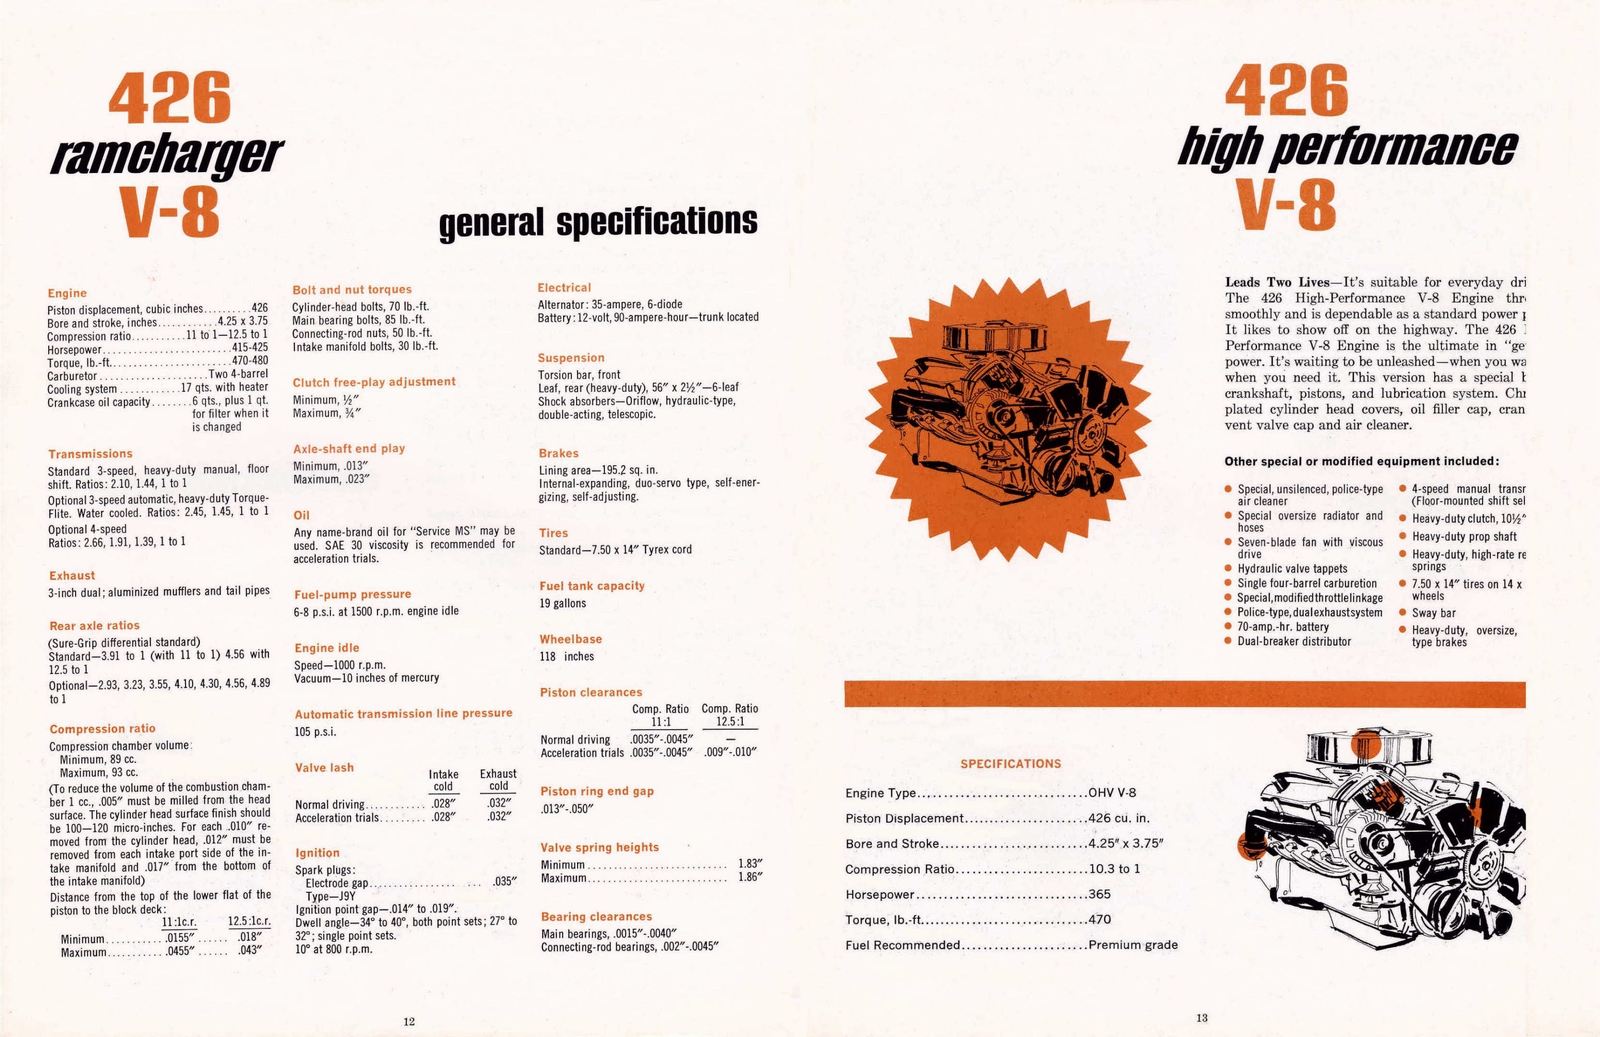 n_1964 Dodge Ramcharger Booklet-12-13.jpg